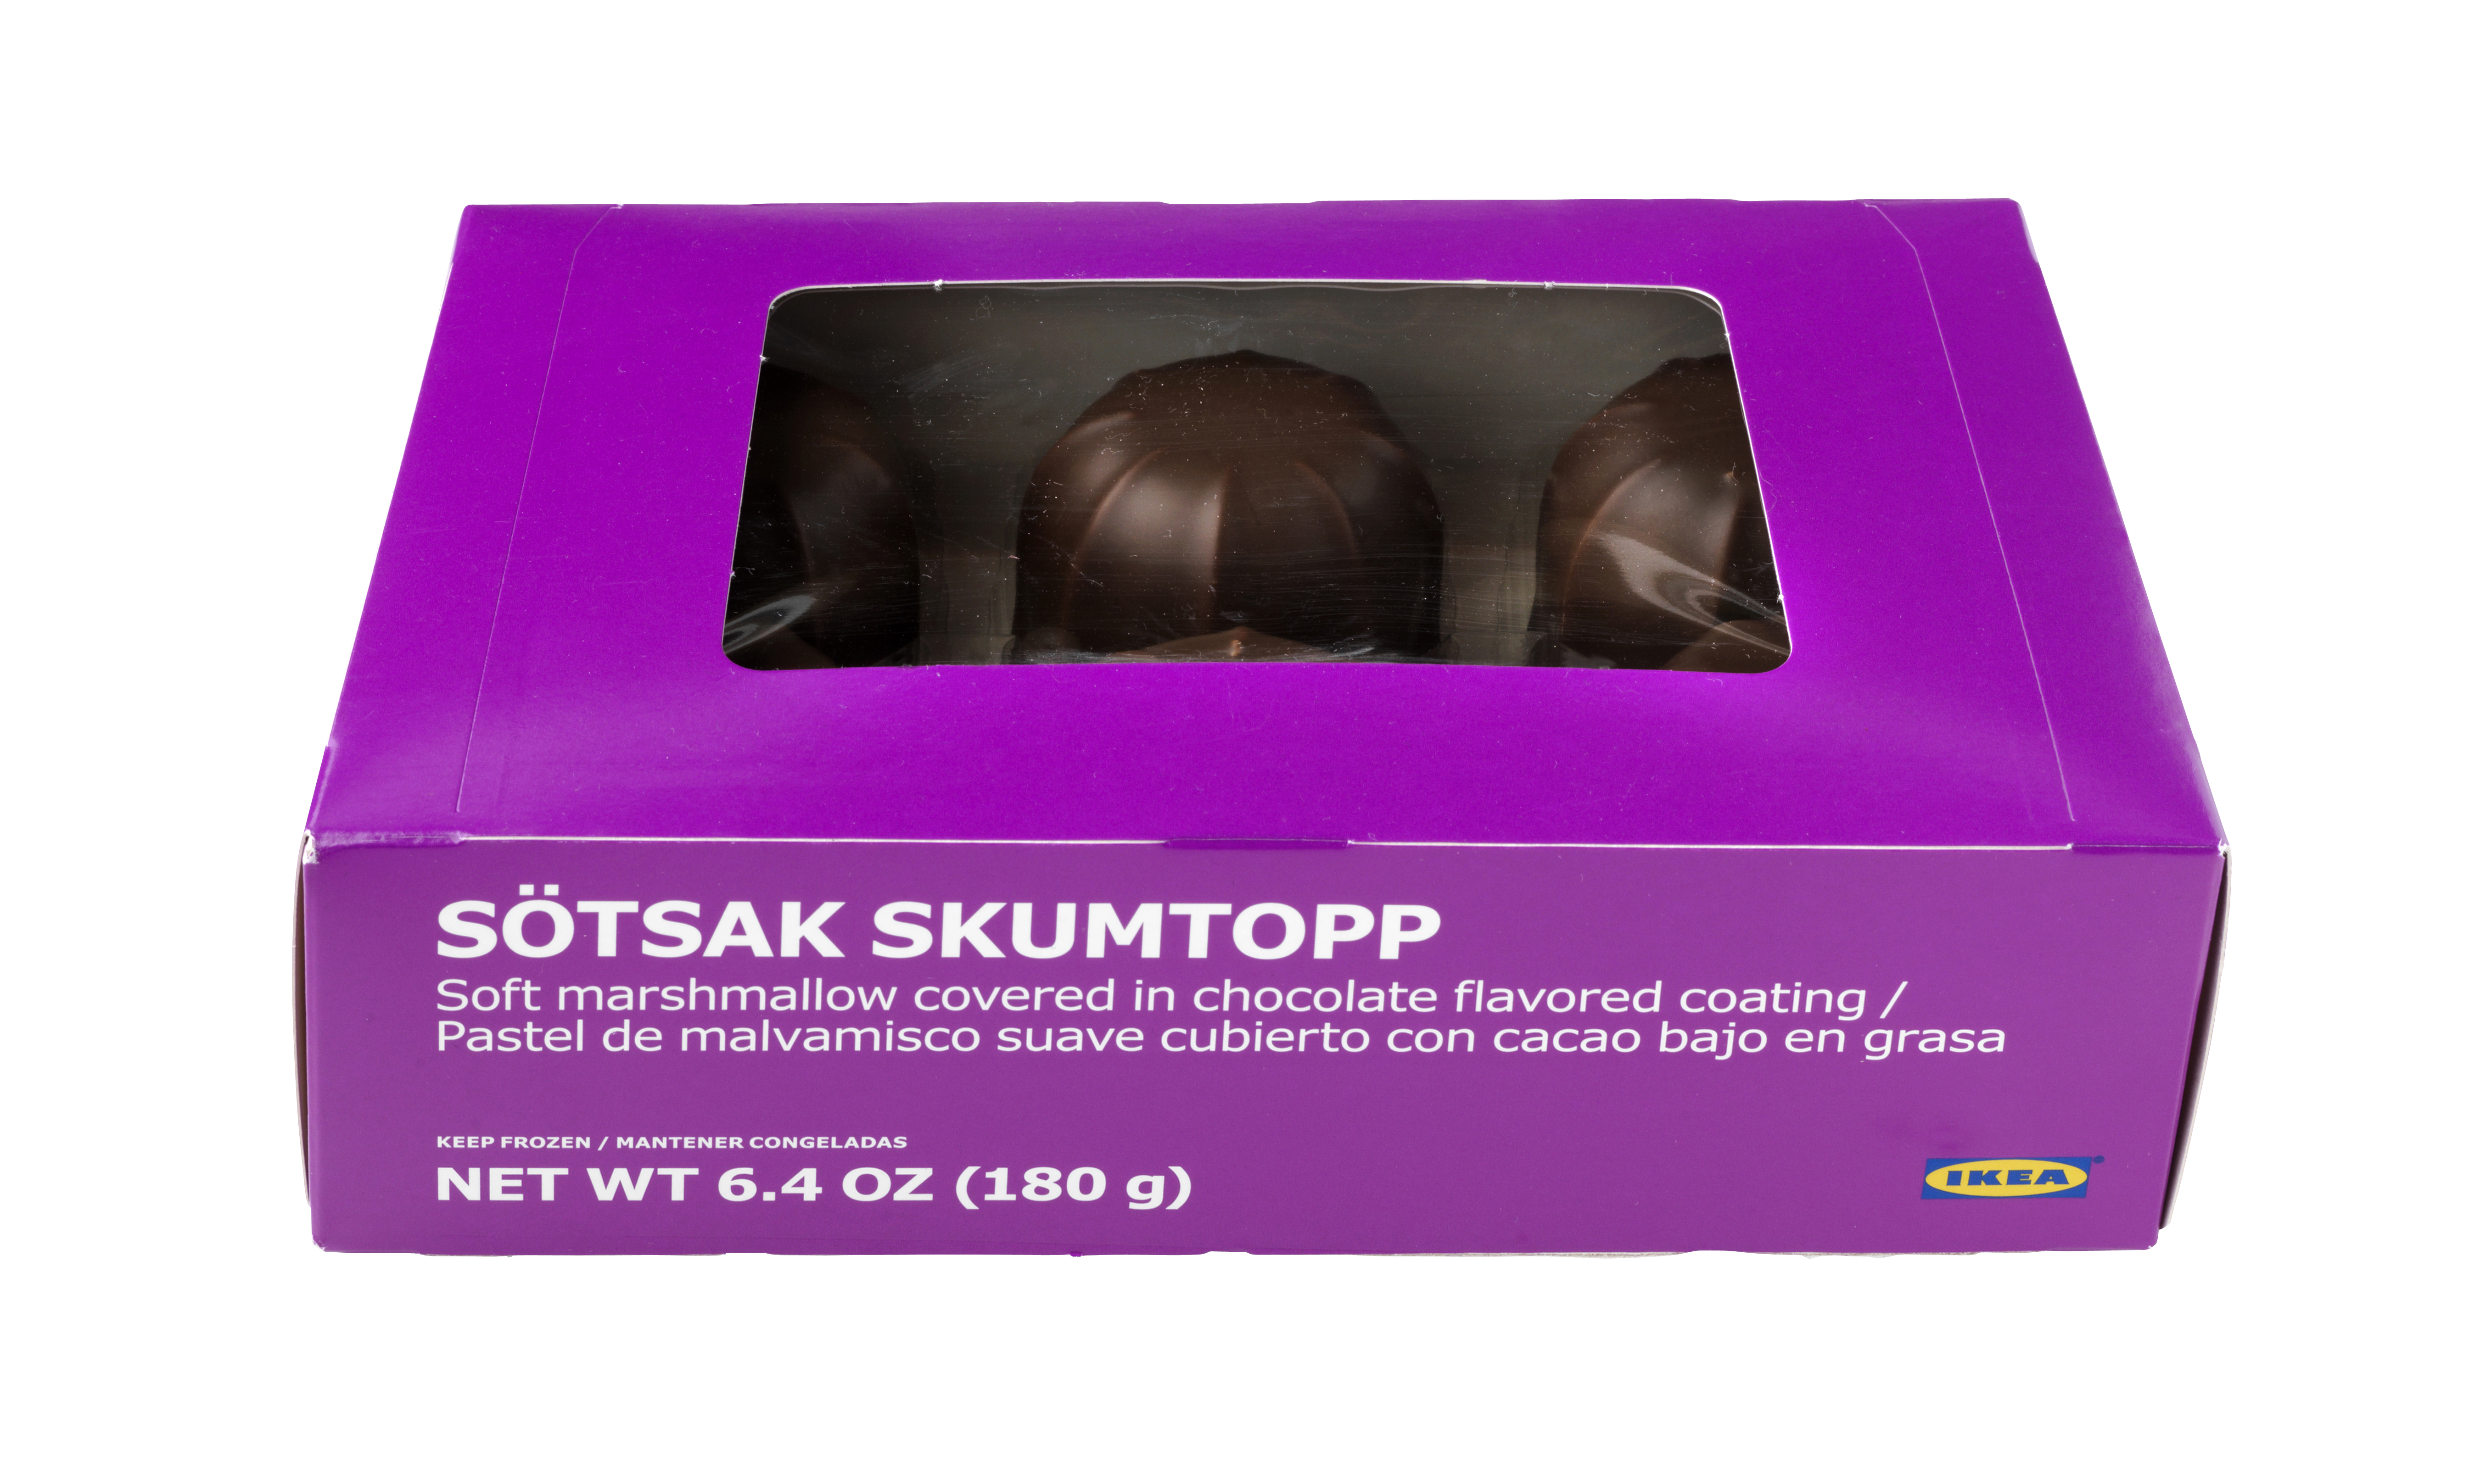 IKEA recheamă prăjiturile de bezea SÖTSAK SKUMTOPP, 180g, din cauza declarării neclare a laptelui ca produs alergen în lista de ingrediente